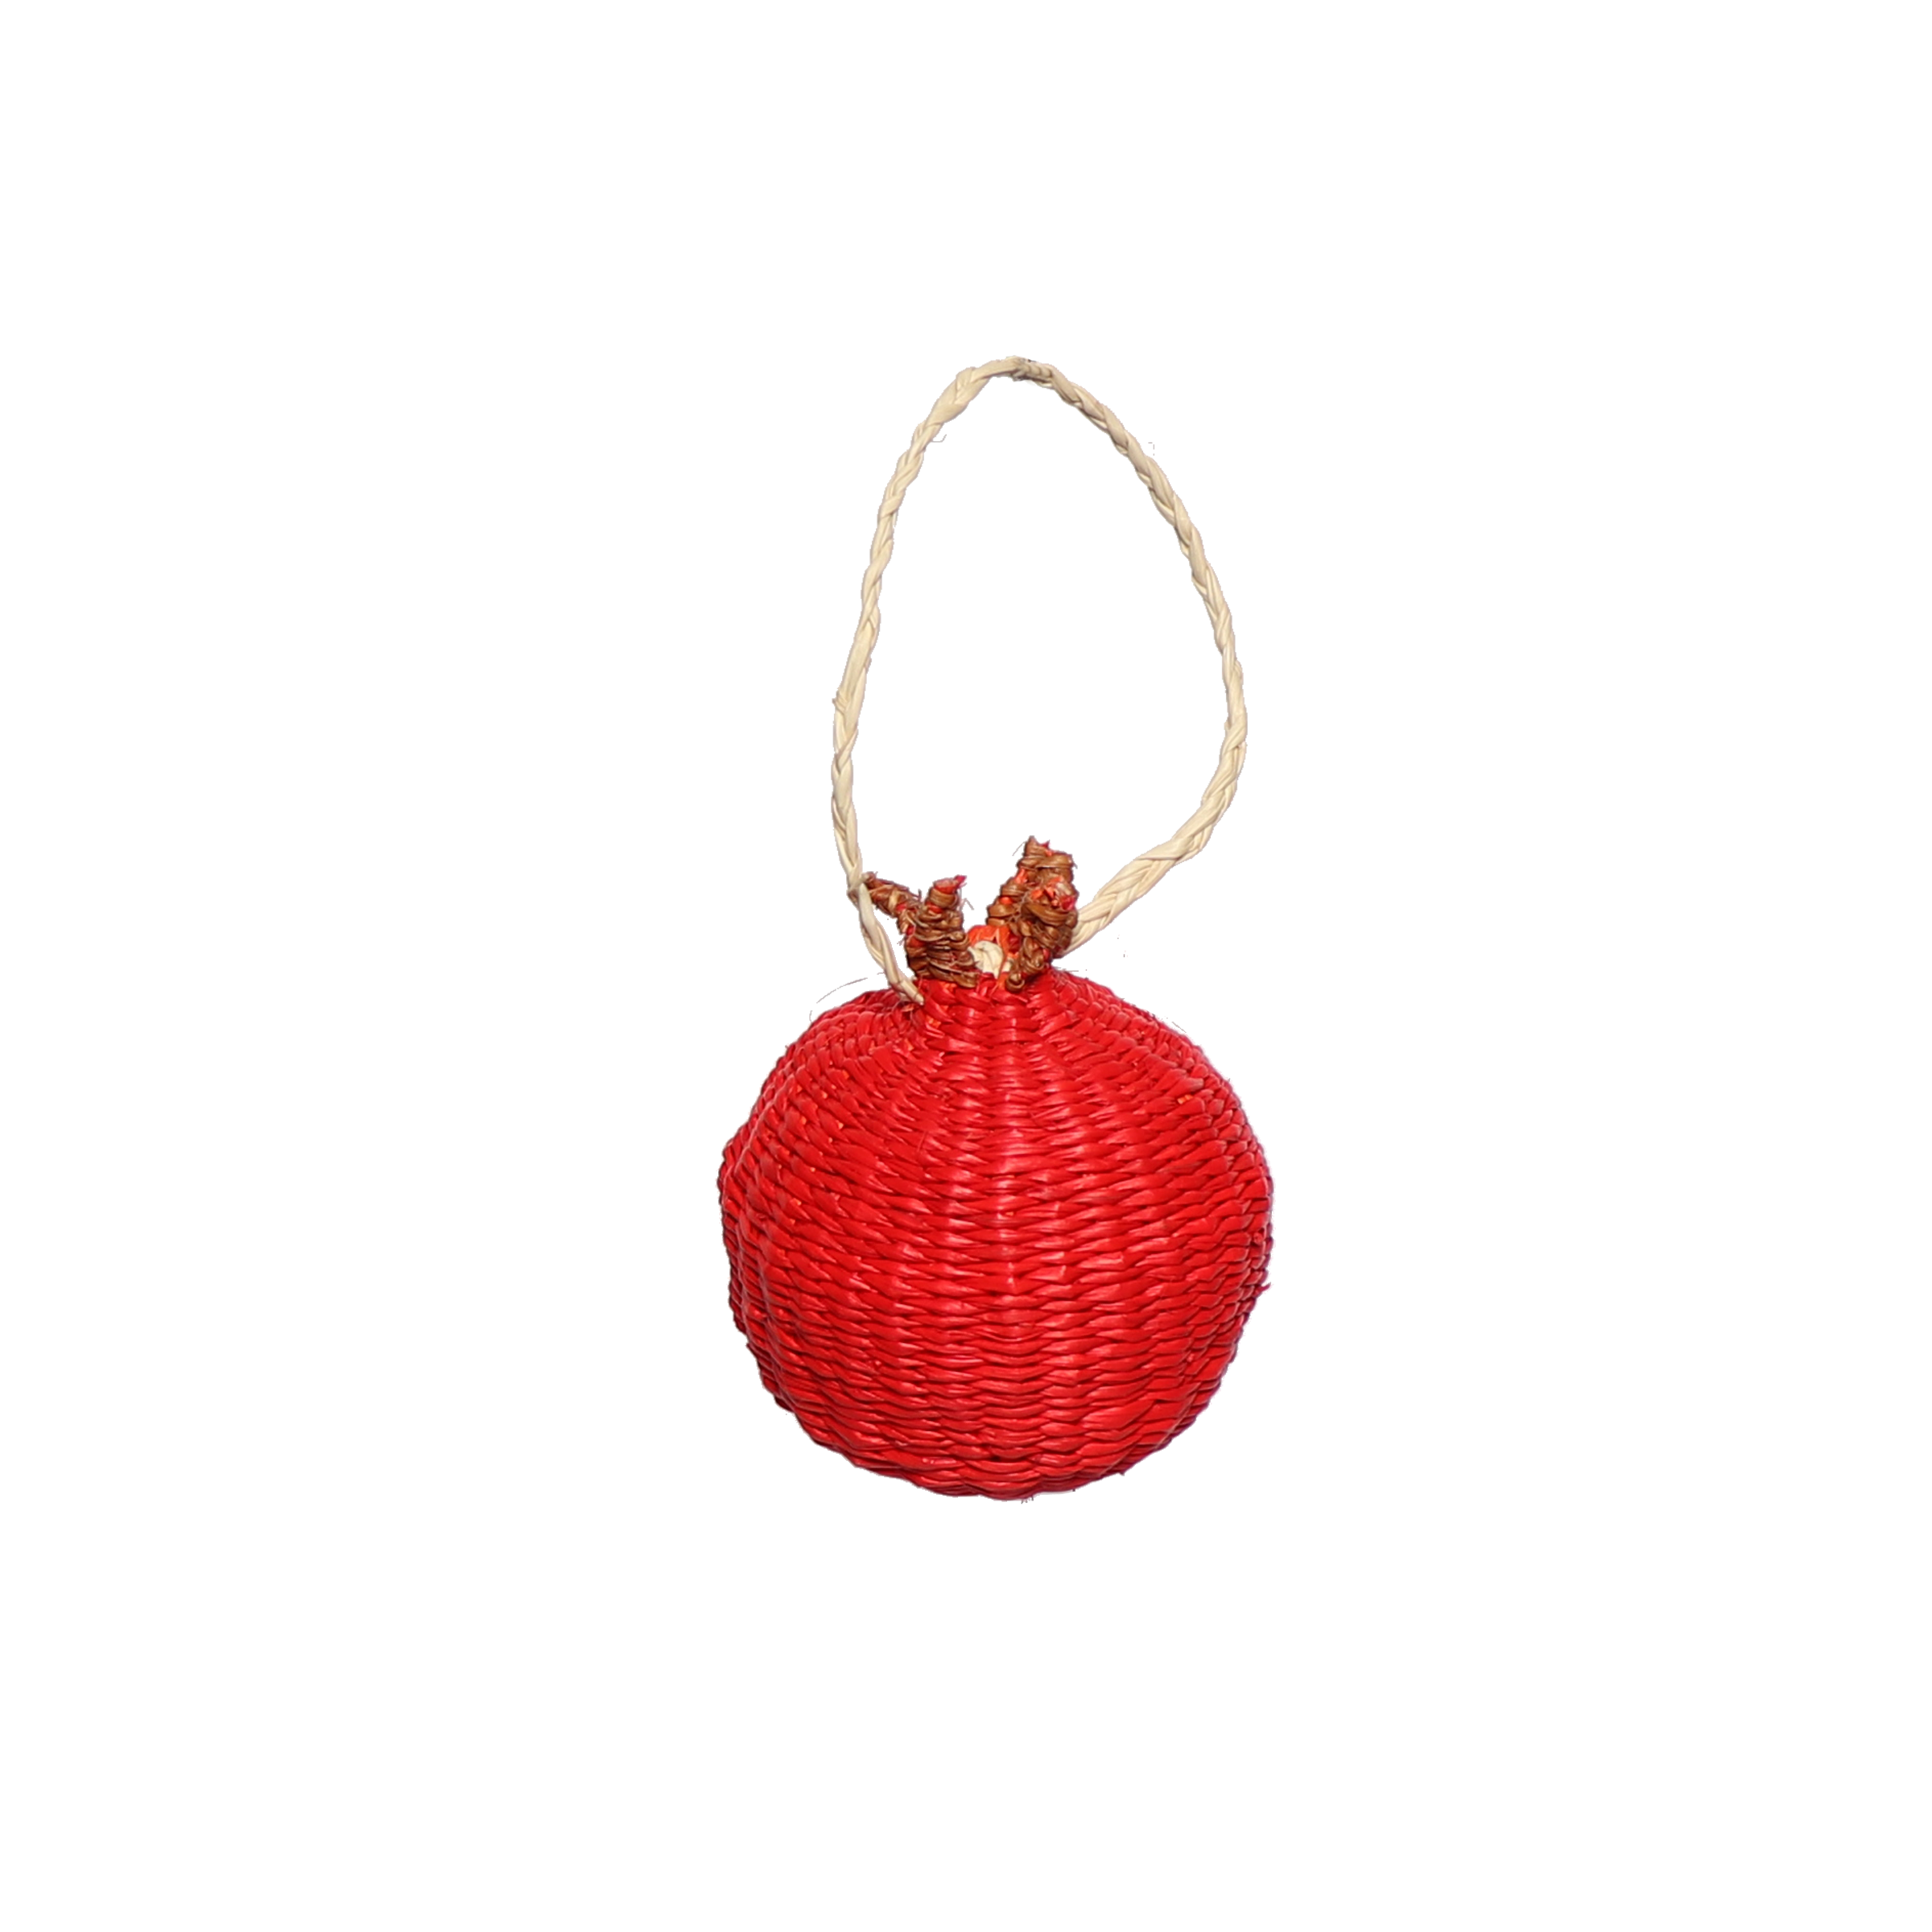 Woven Fruit Pomegranate Decoration, 7cm